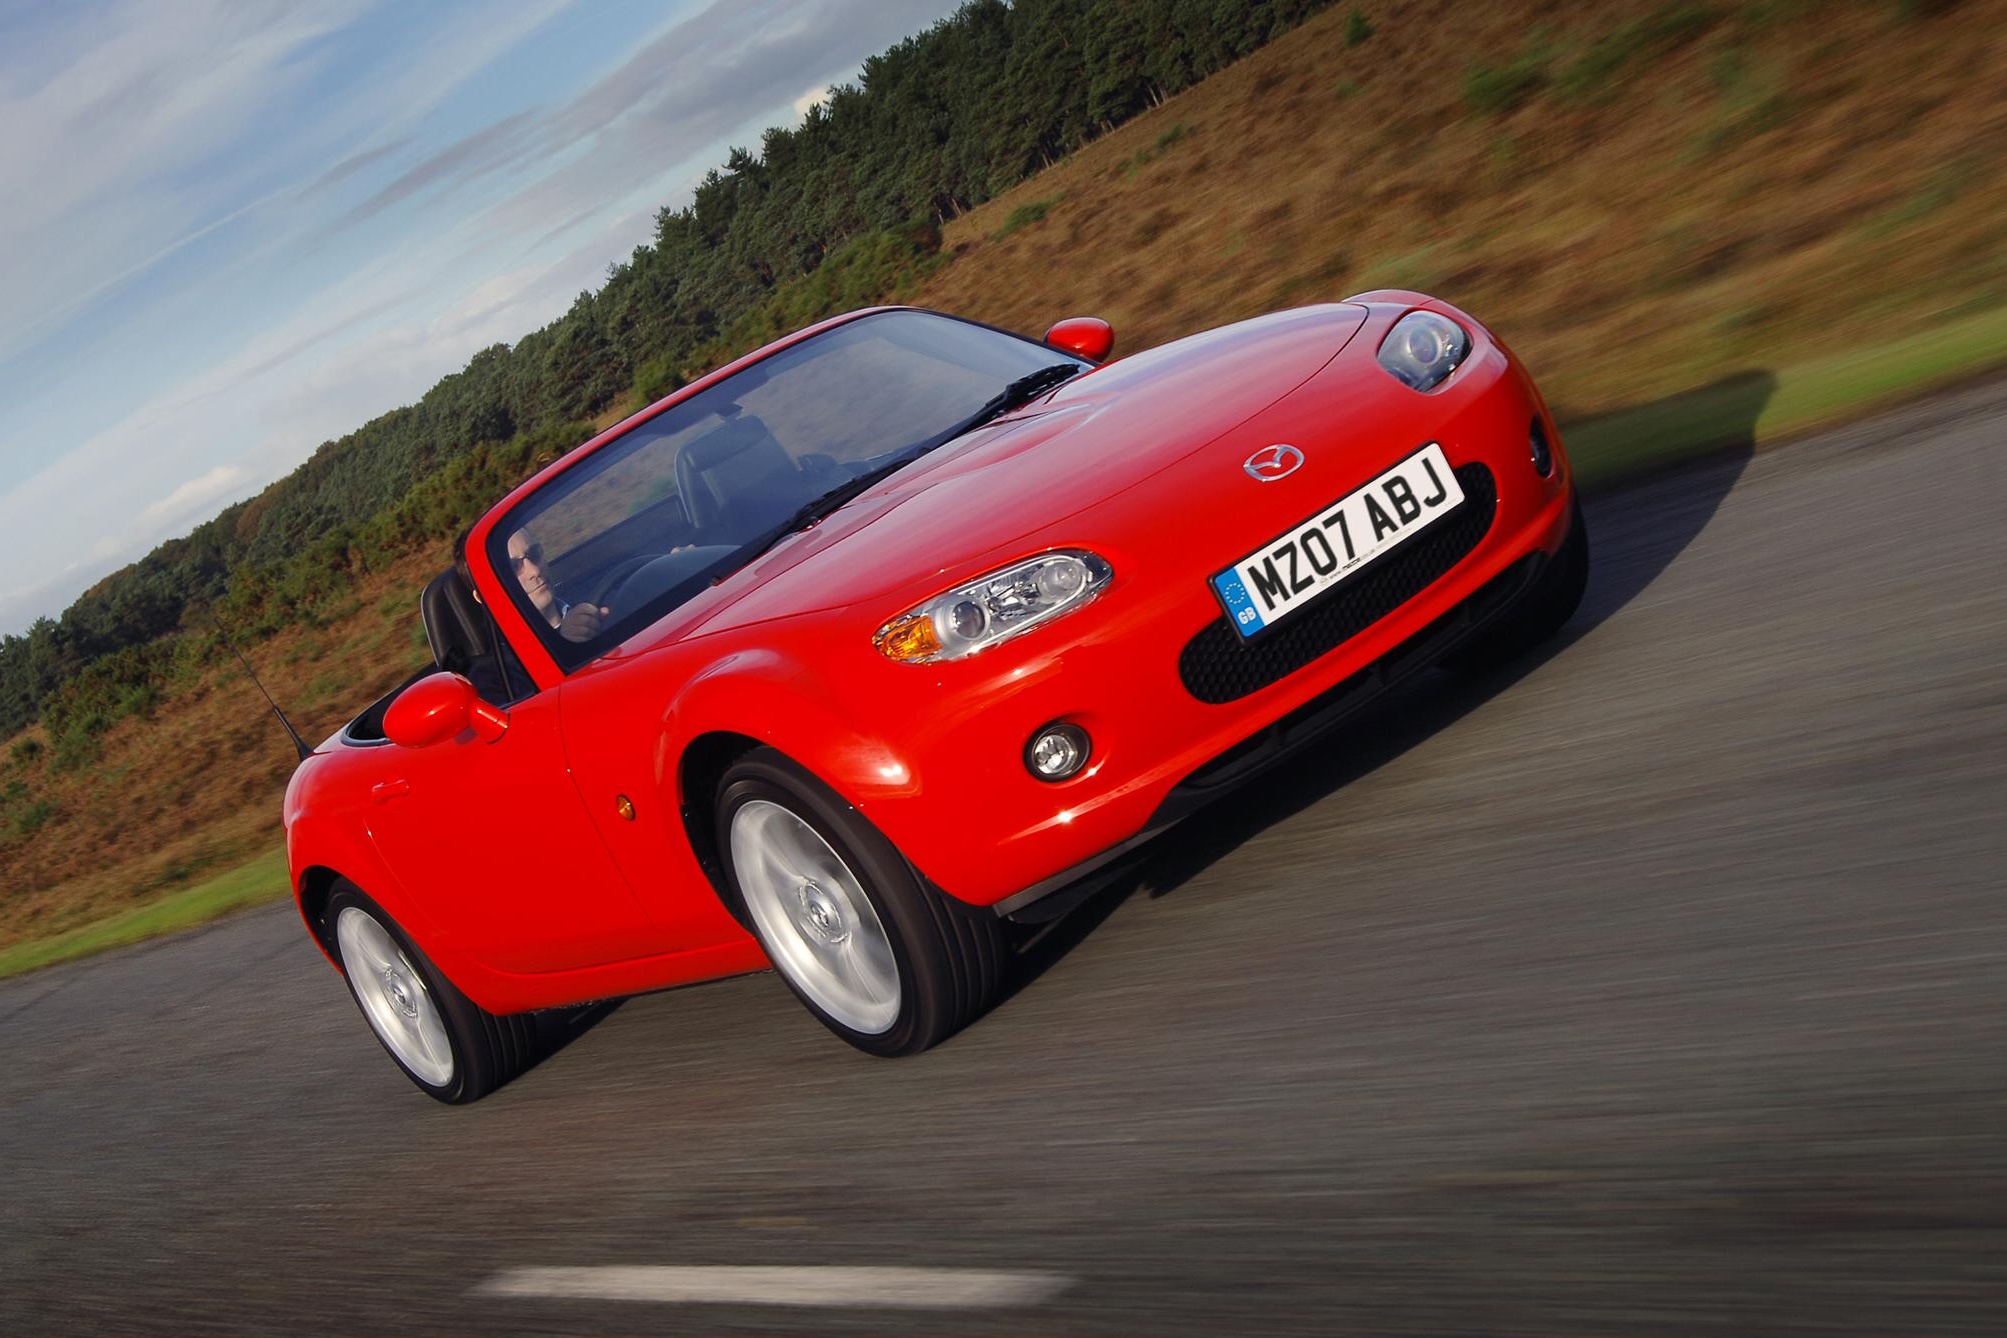 Mazda MX-5 získala ocenění „Nejlepší sportovní automobil“ ve Velké Británii podle JD Power